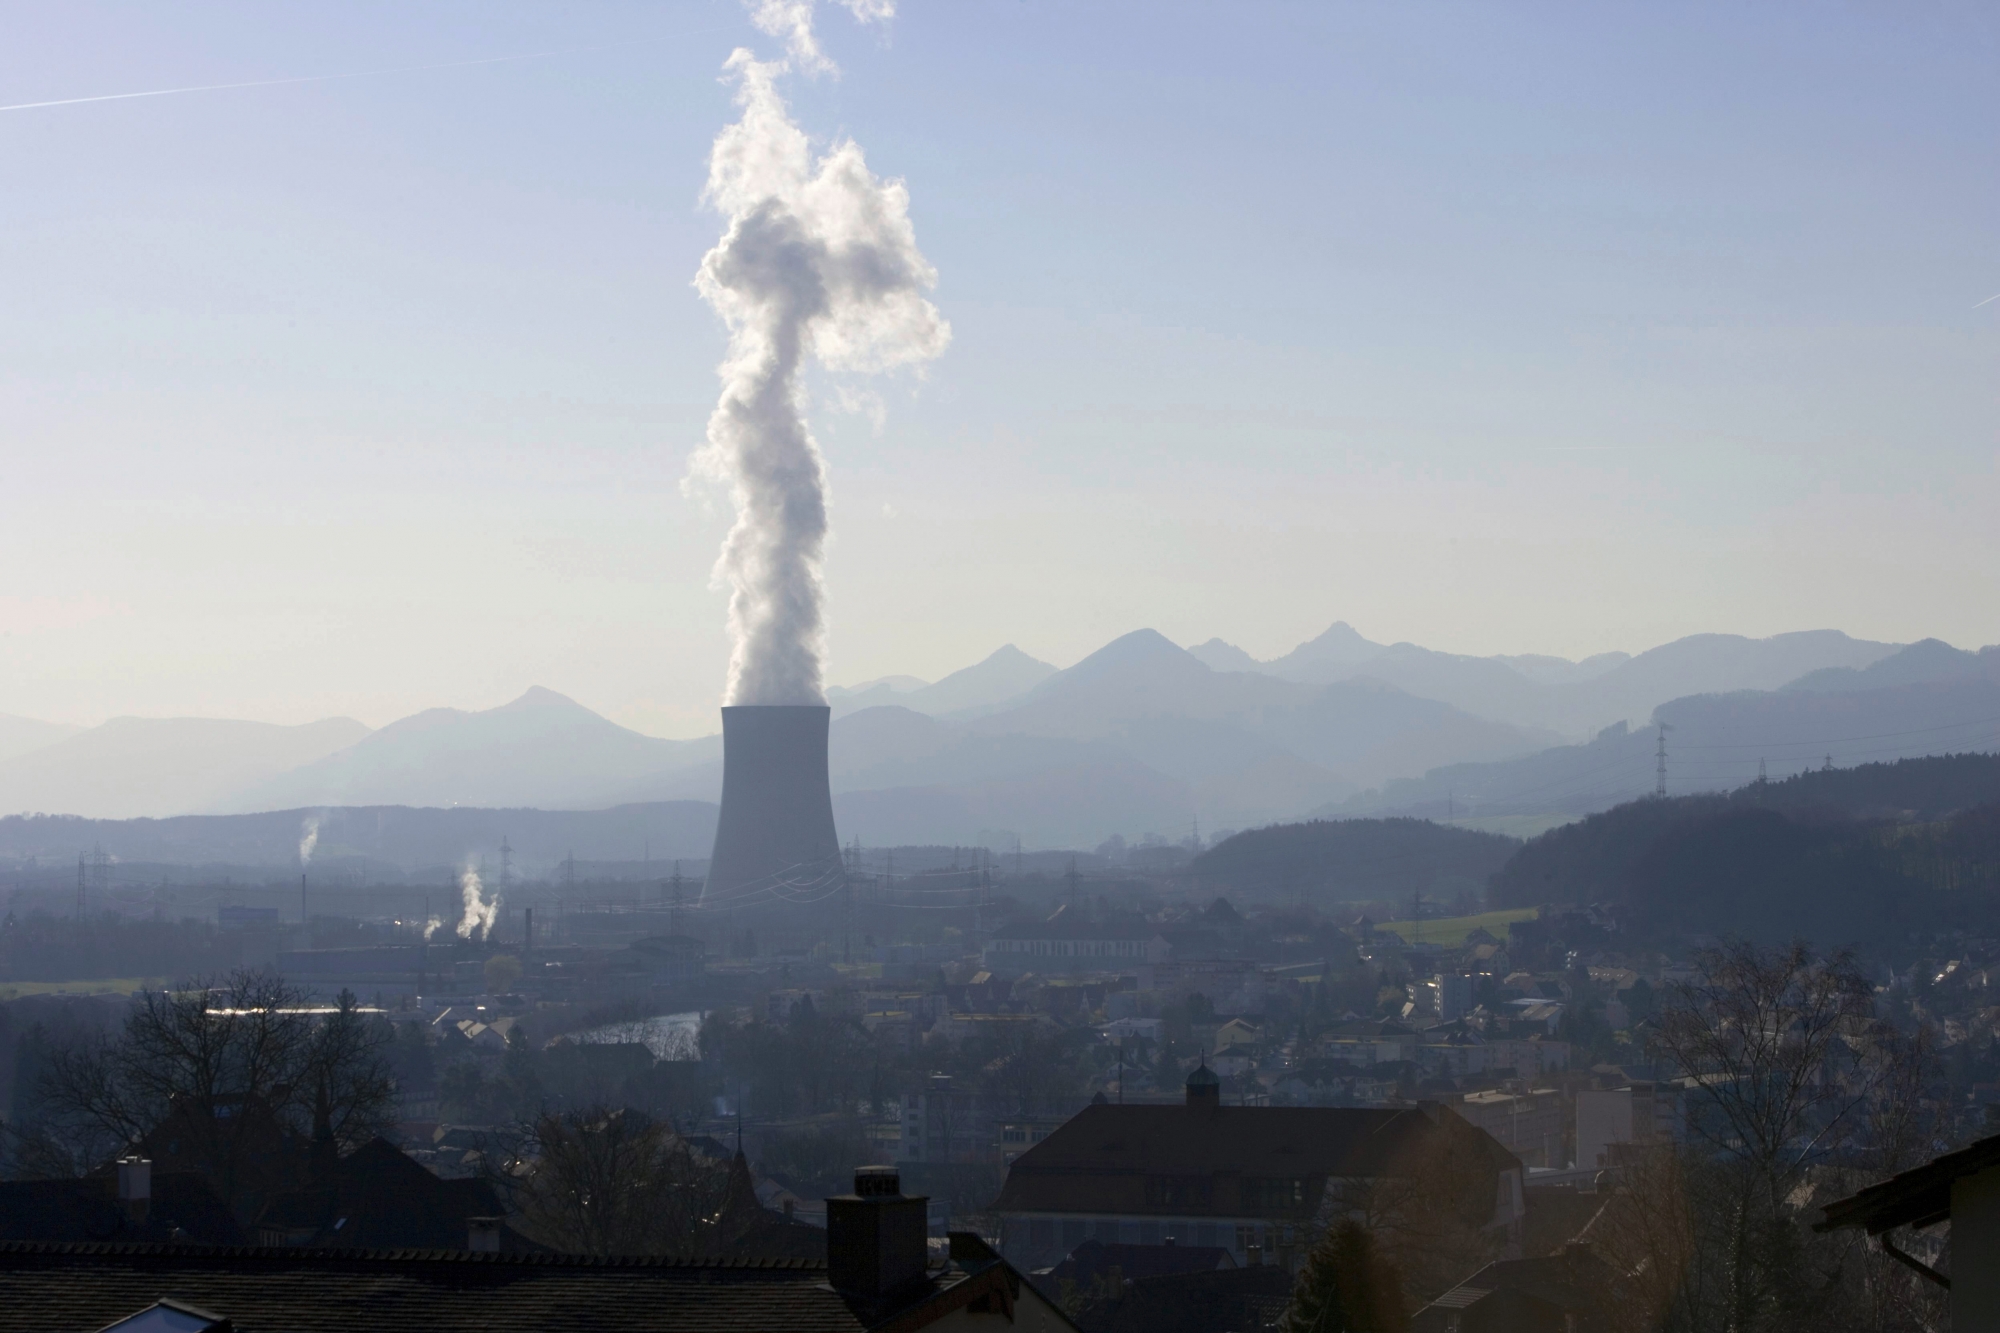 ARCHIV - Eine Dampffahne aus verdunstetem Kuehlwasser stroemt am 12. Maerz 2007 aus dem Kuehlturm des Kernkraftwerks Goesgen, aufgenommen in Niedergoesgen, Schweiz. Die Kernanlagen in der Schweiz waren 2007 in gutem Zustand und wurden gemaess den Vorgaben betrieben. Zu diesem Schluss kommt die Hauptabteilung f¸r die Sicherheit der Kernanlagen (HSK) in ihrem Jahresrueckblick. Der Strahlenschutz sei jederzeit gewaehrleistet gewesen, teilte die HSK am Dienstag, 15. Januar 2008 mit. Im Laufe des vergangenen Jahres hatte die Aufsichtsbehoerde in den fuenf Kernanlagen 13 Vorfaelle festgestellt: Insgesamt acht in den beiden Bloecken des KKW Beznau, drei im KKW Leibstadt und je einen in den KKW  und Goesgen.  (KEYSTONE/Martin Ruetschi)

 SCHWEIZ AKW HSK BILANZ 2007